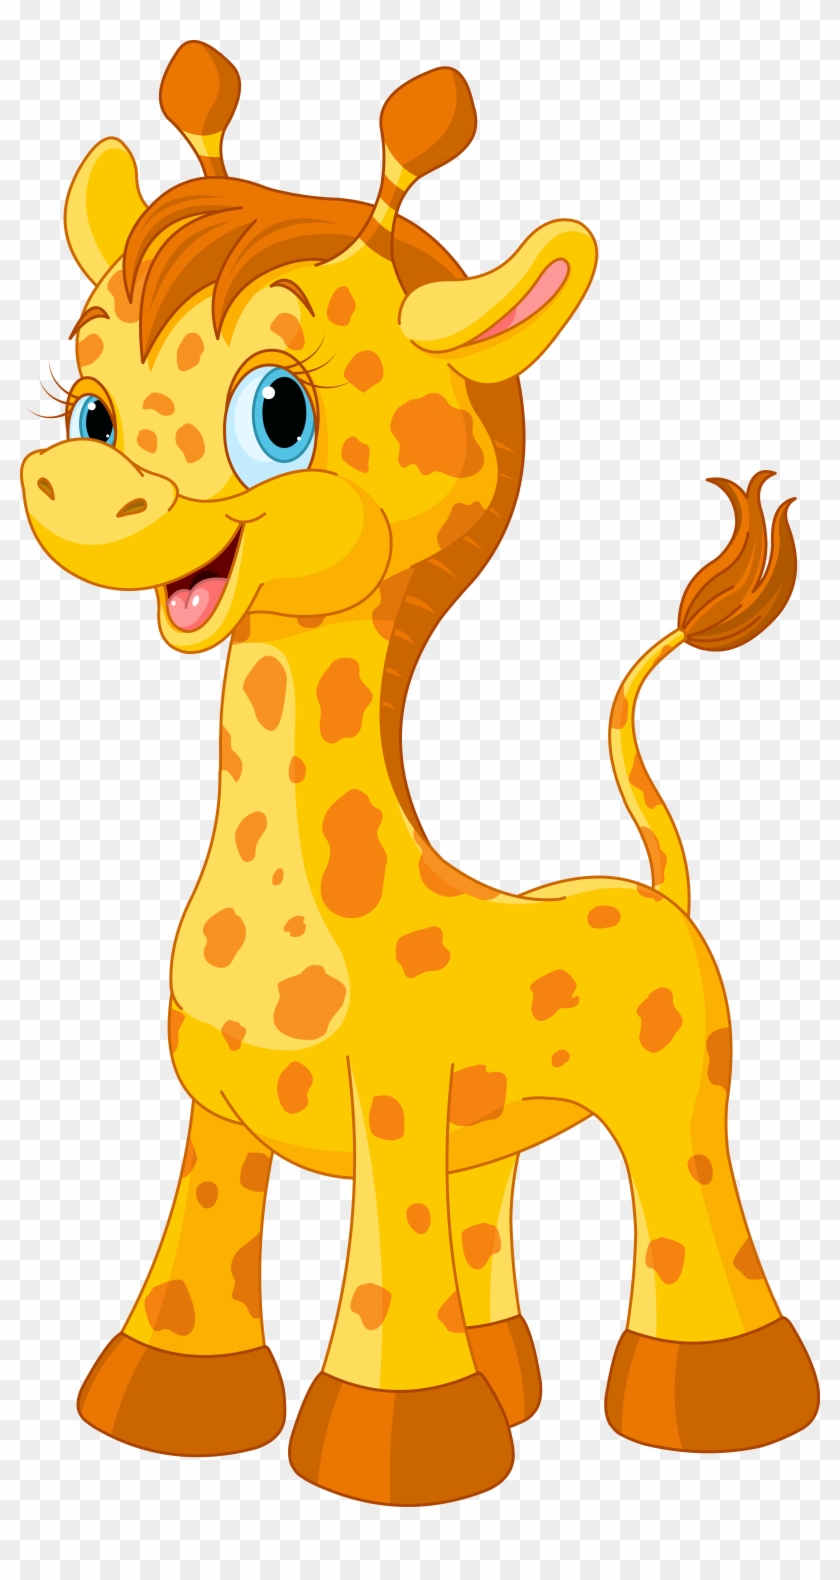 Giraffe Coloring Book Clip Art - Imagen De Jirafas Caricaturas #873168